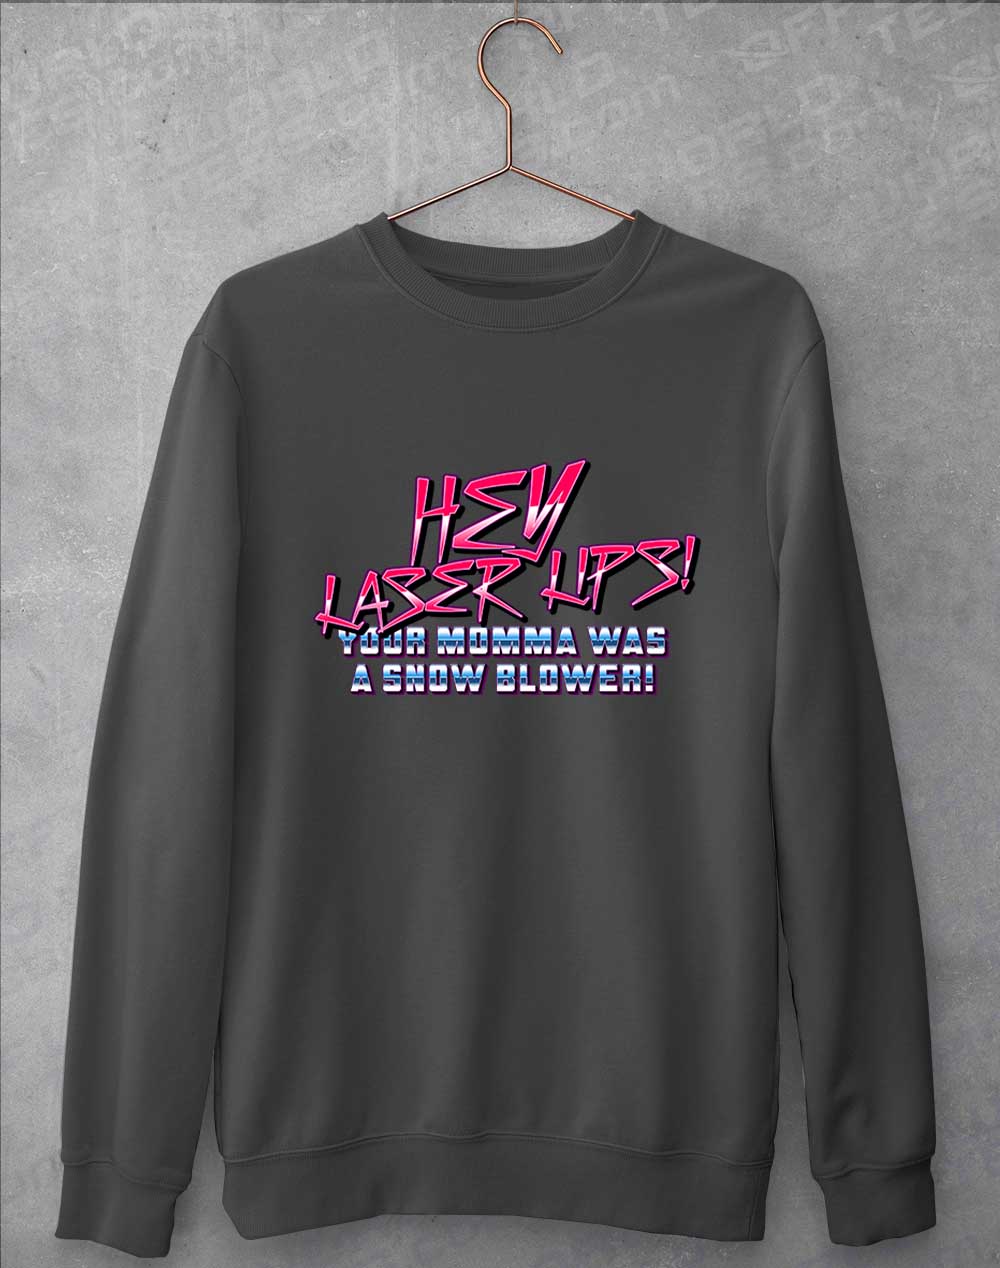 Charcoal - Hey Laser Lips Sweatshirt